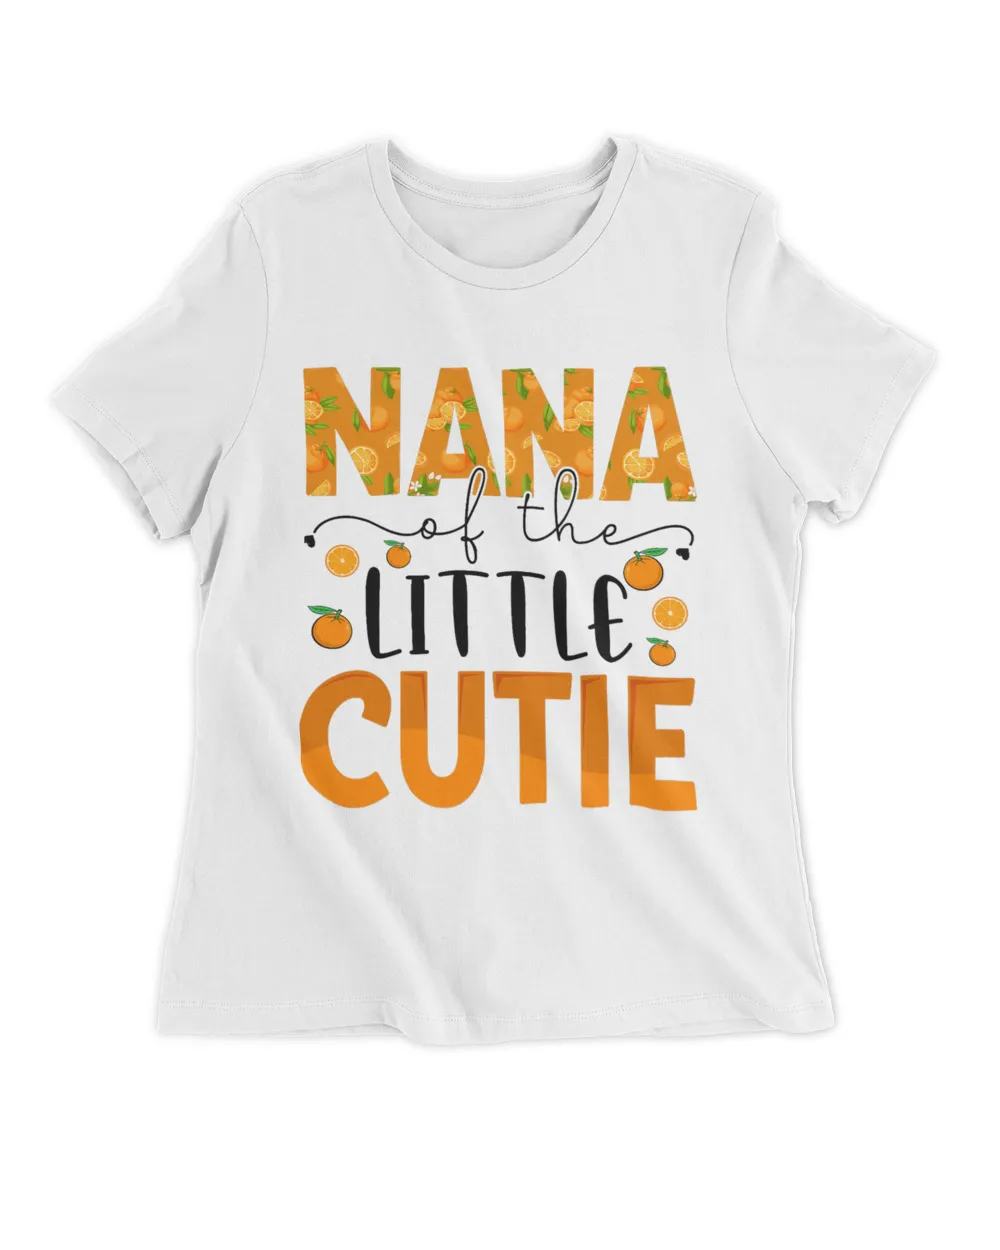 Nana Little Cutie Baby Shower Orange 1st Birthday Party